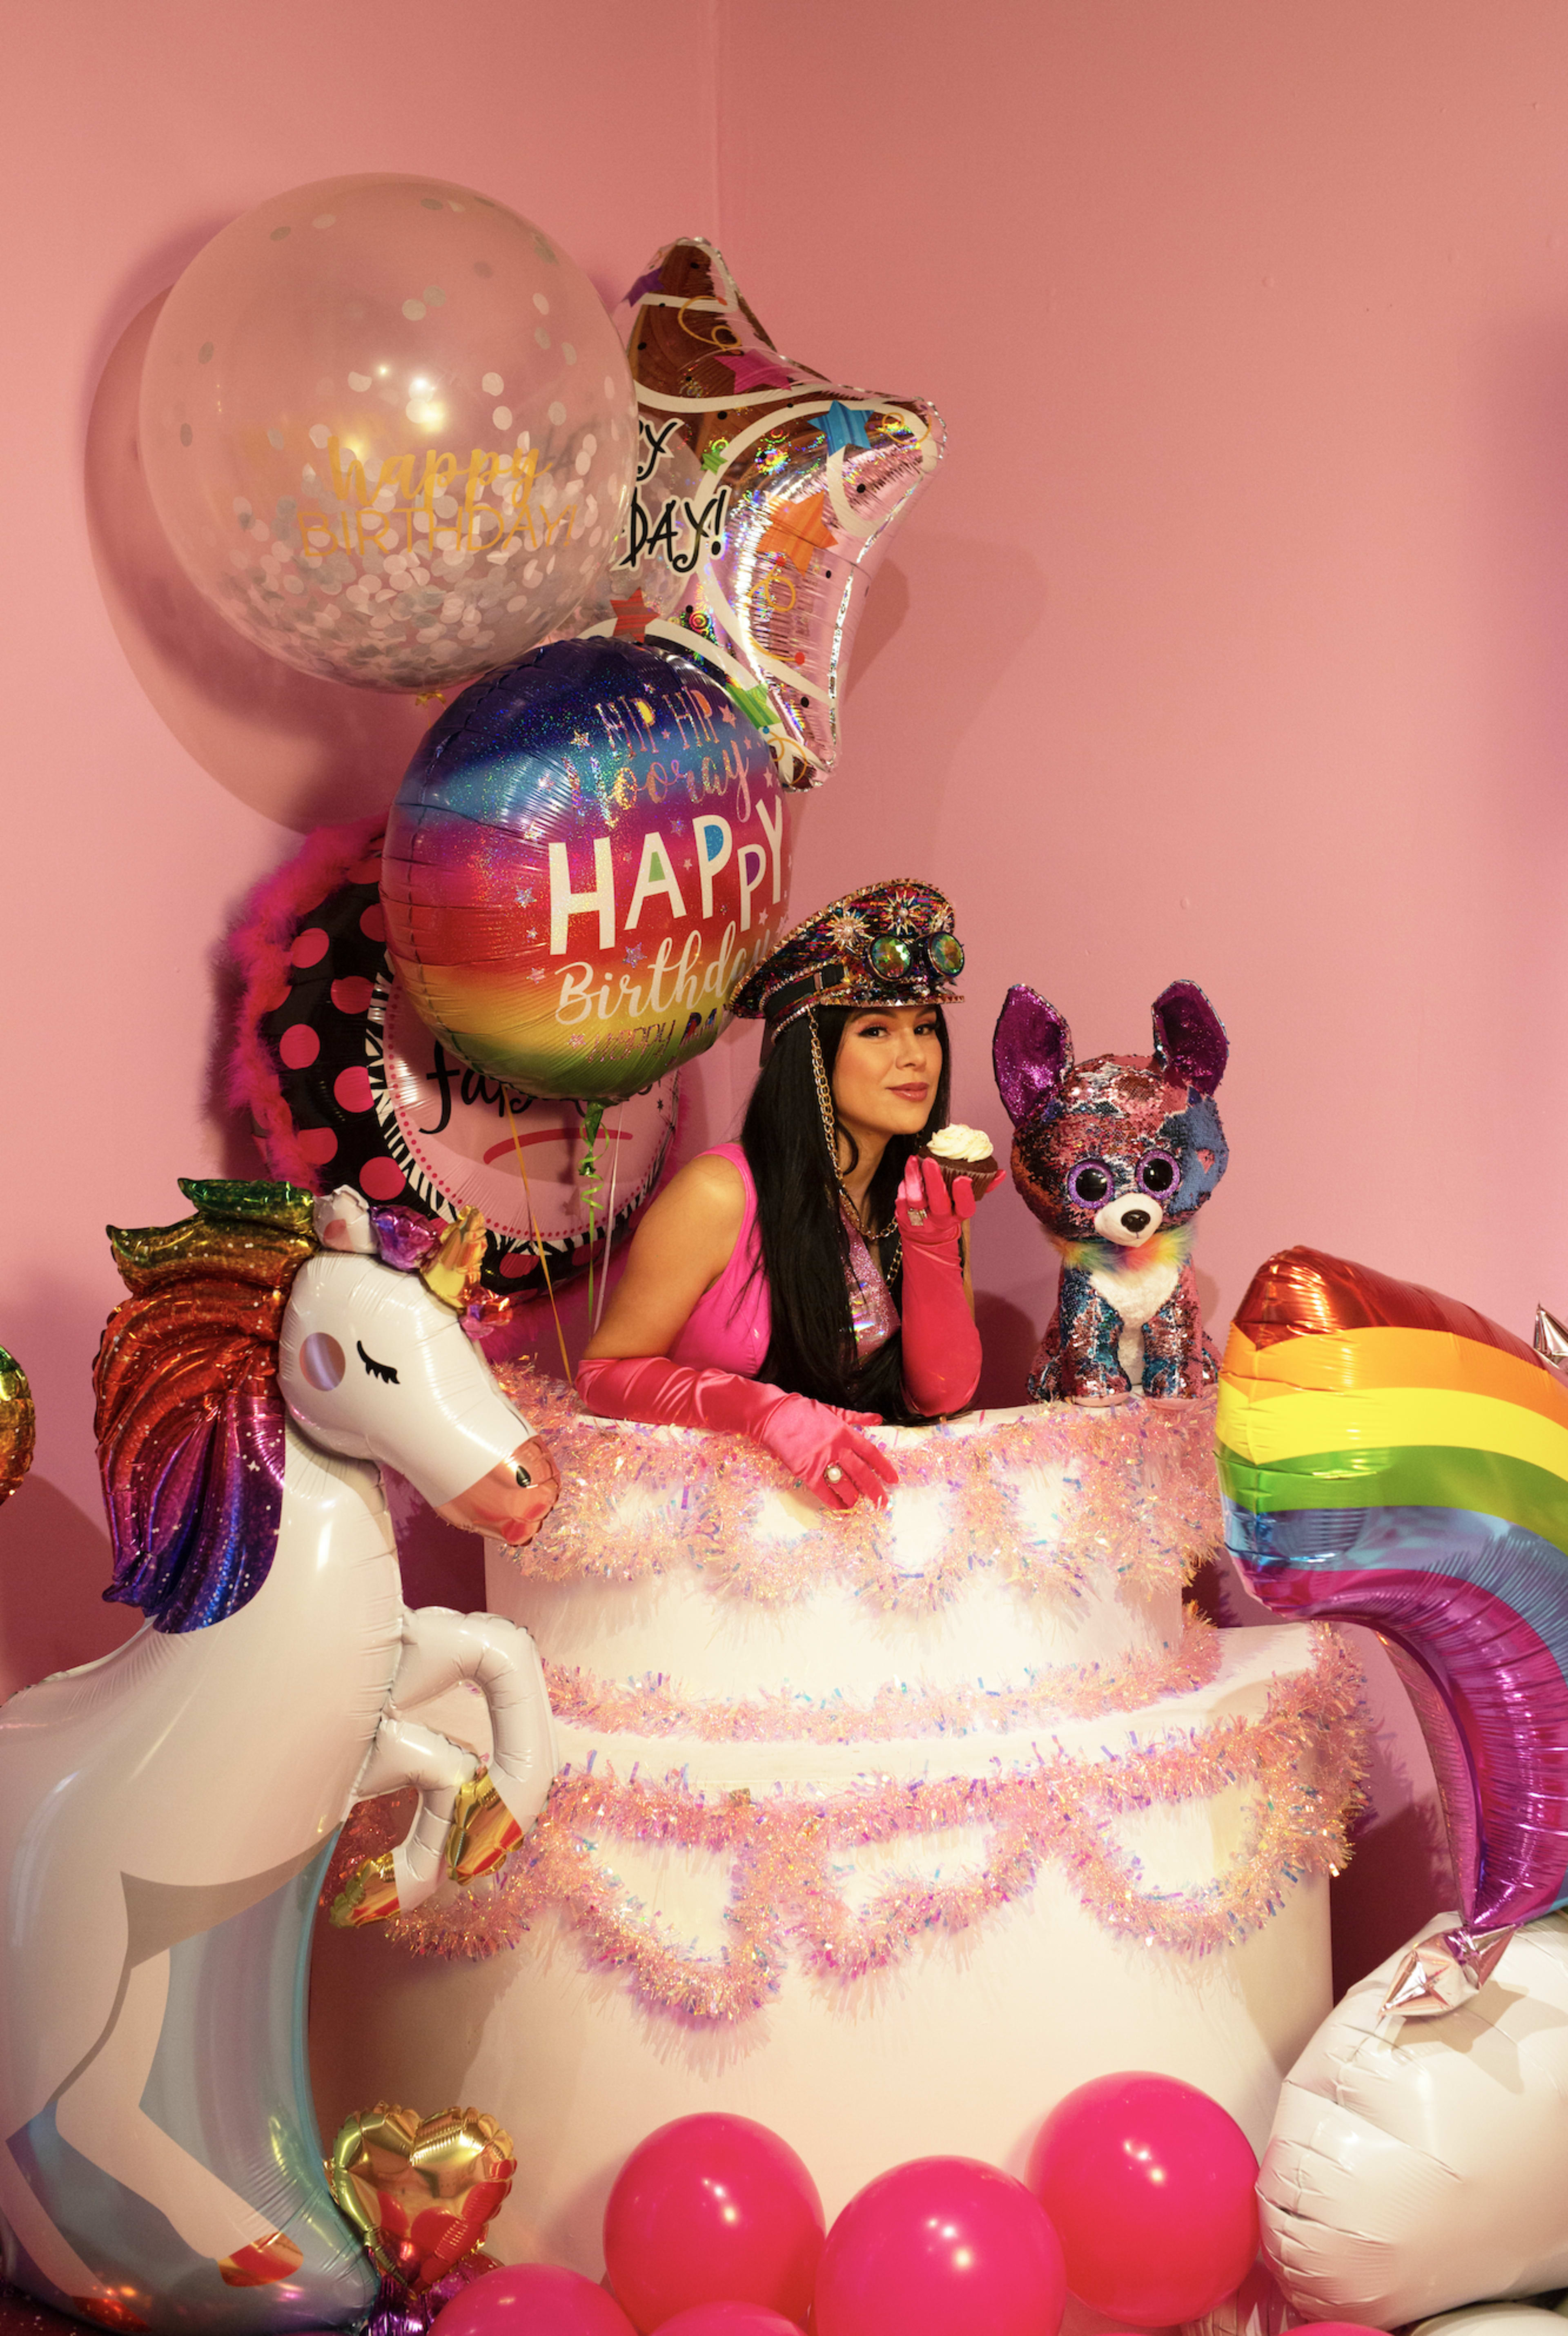 Una sesión de fotos de cumpleaños con temática de unicornios, con una mujer sentada encima de una tarta rodeada de globos.